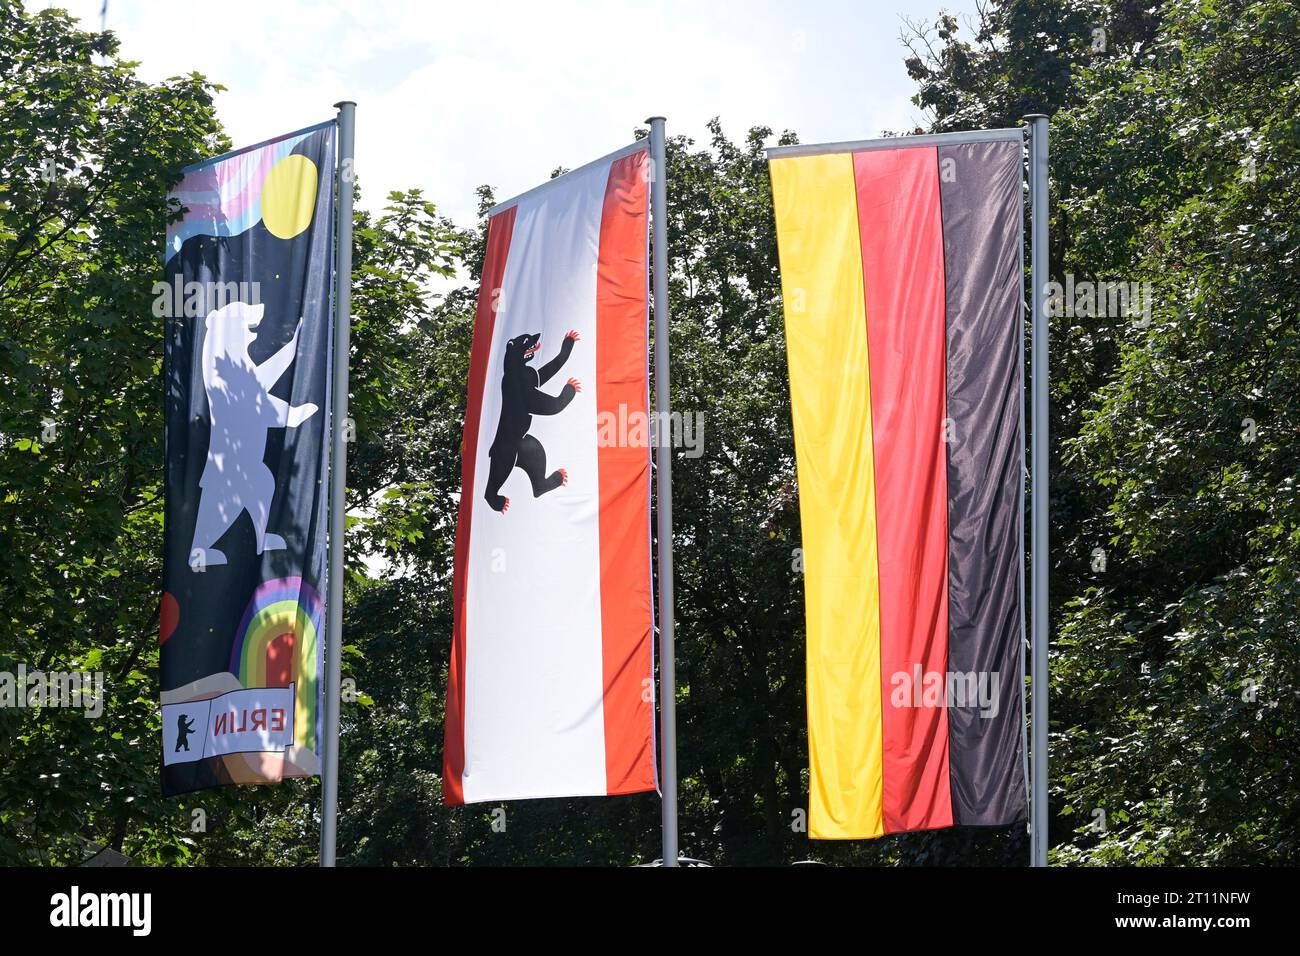 Berlin:Landesflagge Berlin mit Bär und Deutschland, Flagge der  Bundesrepublik Deutschland, offiziell Bundesflagge, ist ein deutsches  Hoheitszeichen und Staatssymbol und zeigt laut Art. 22 des Grundgesetzes  die Farben Schwarz, Rot und Gold. Logos